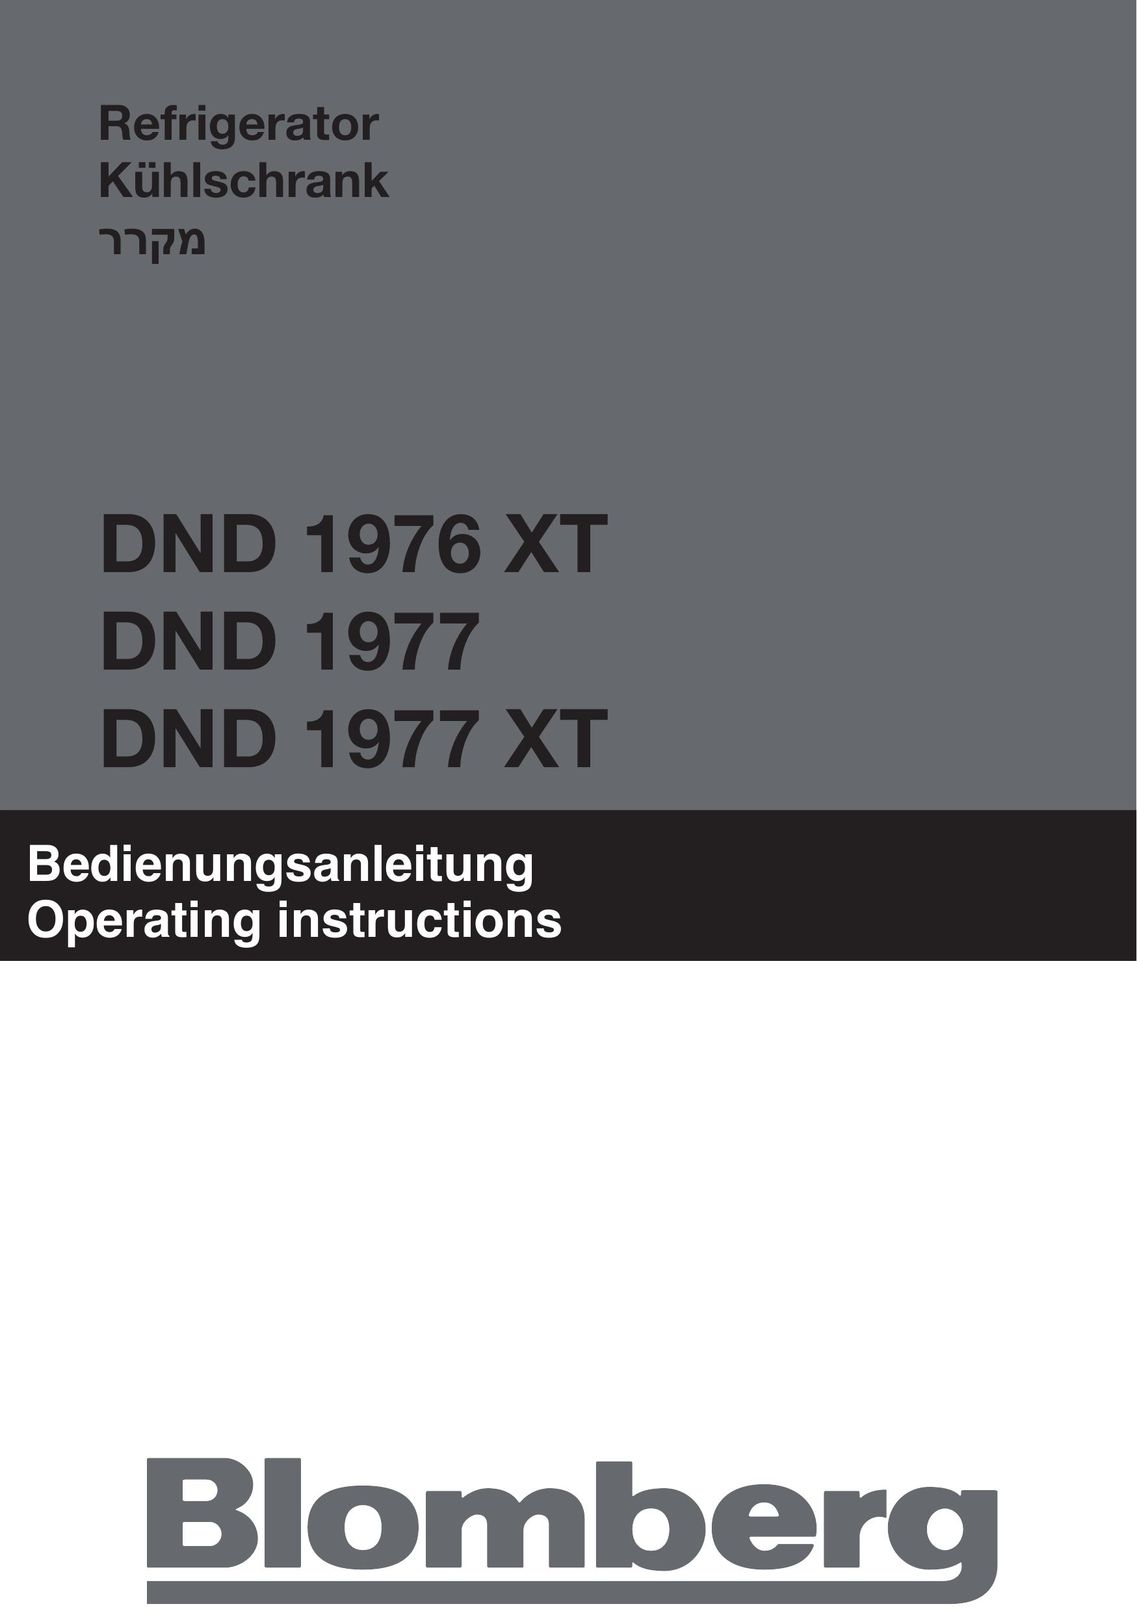 Blomberg DND 1977 Ice Maker User Manual